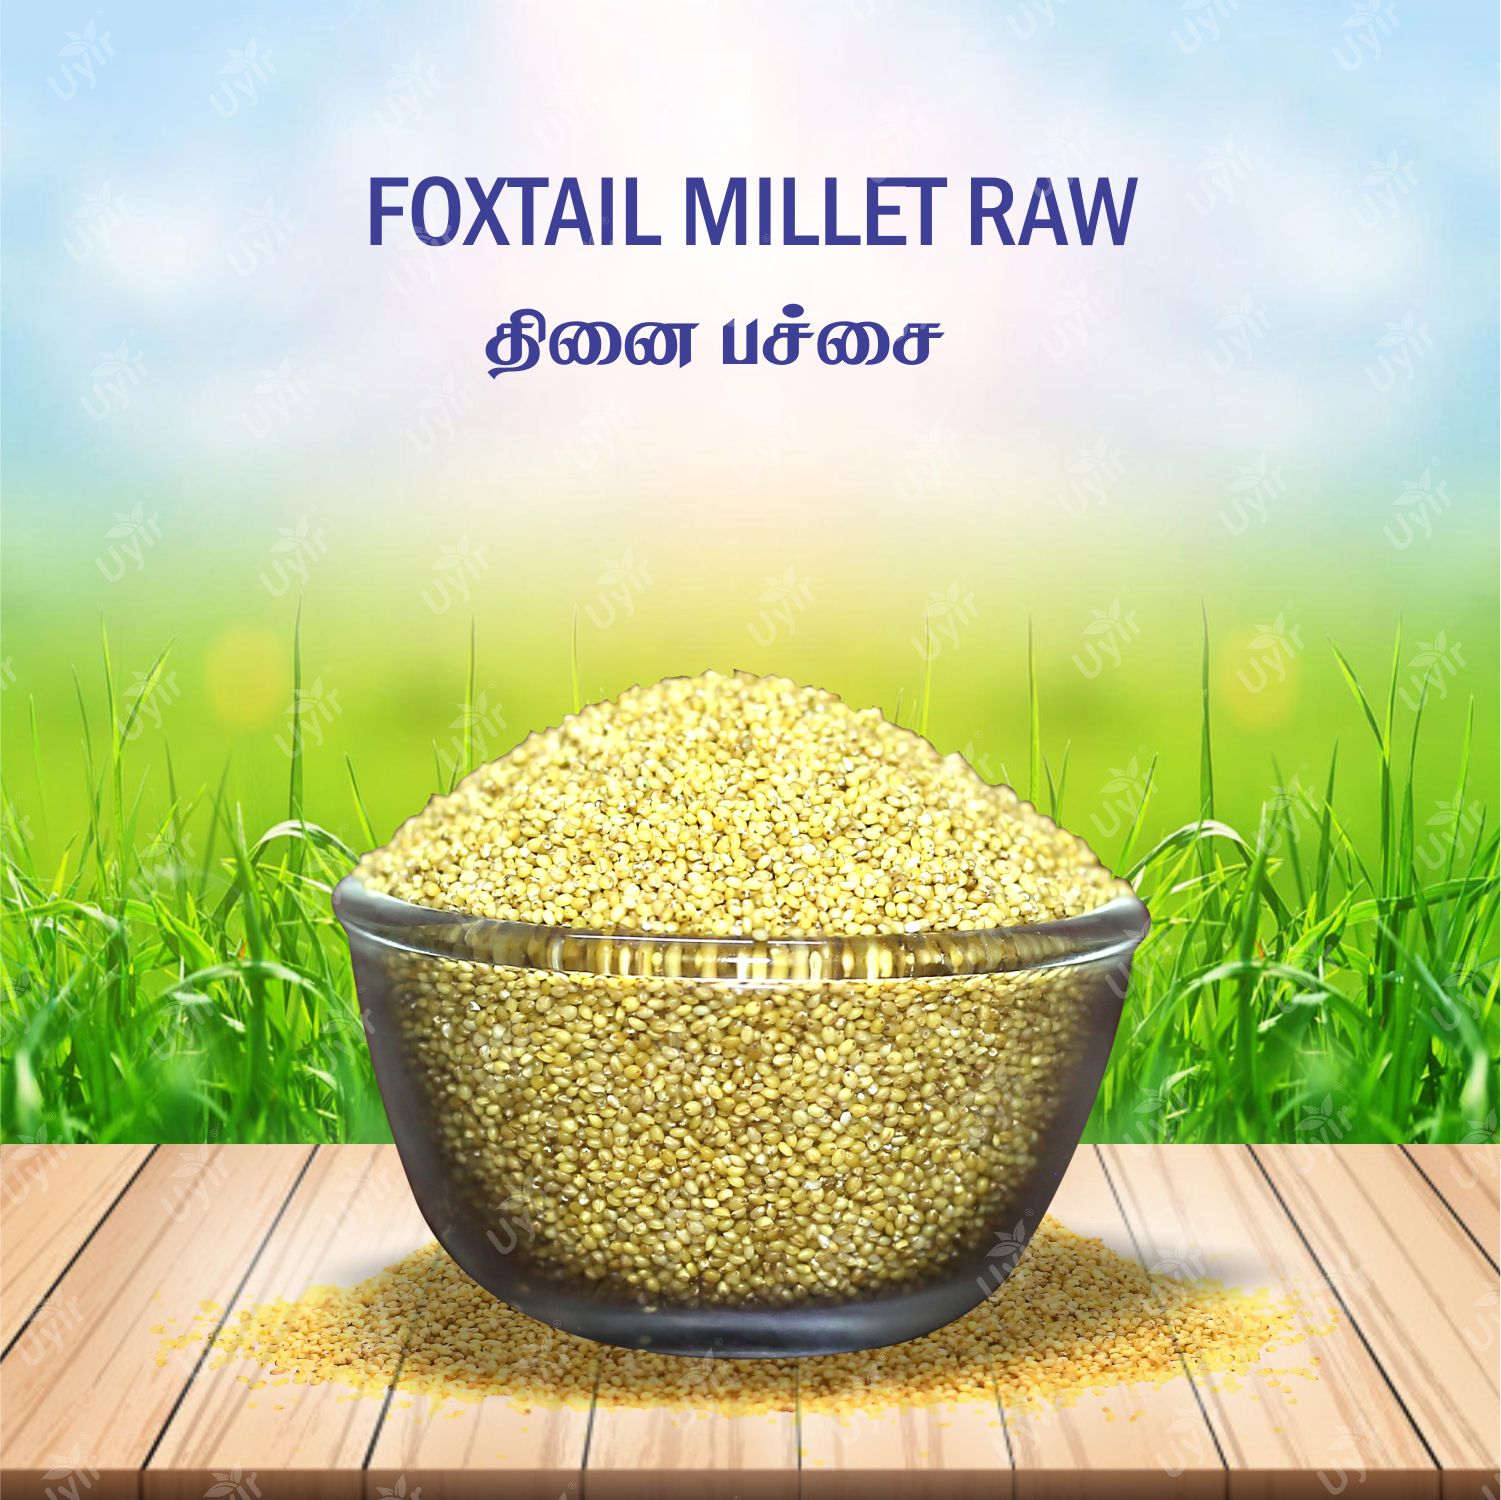 தினை (Thinai / Foxtail millet)